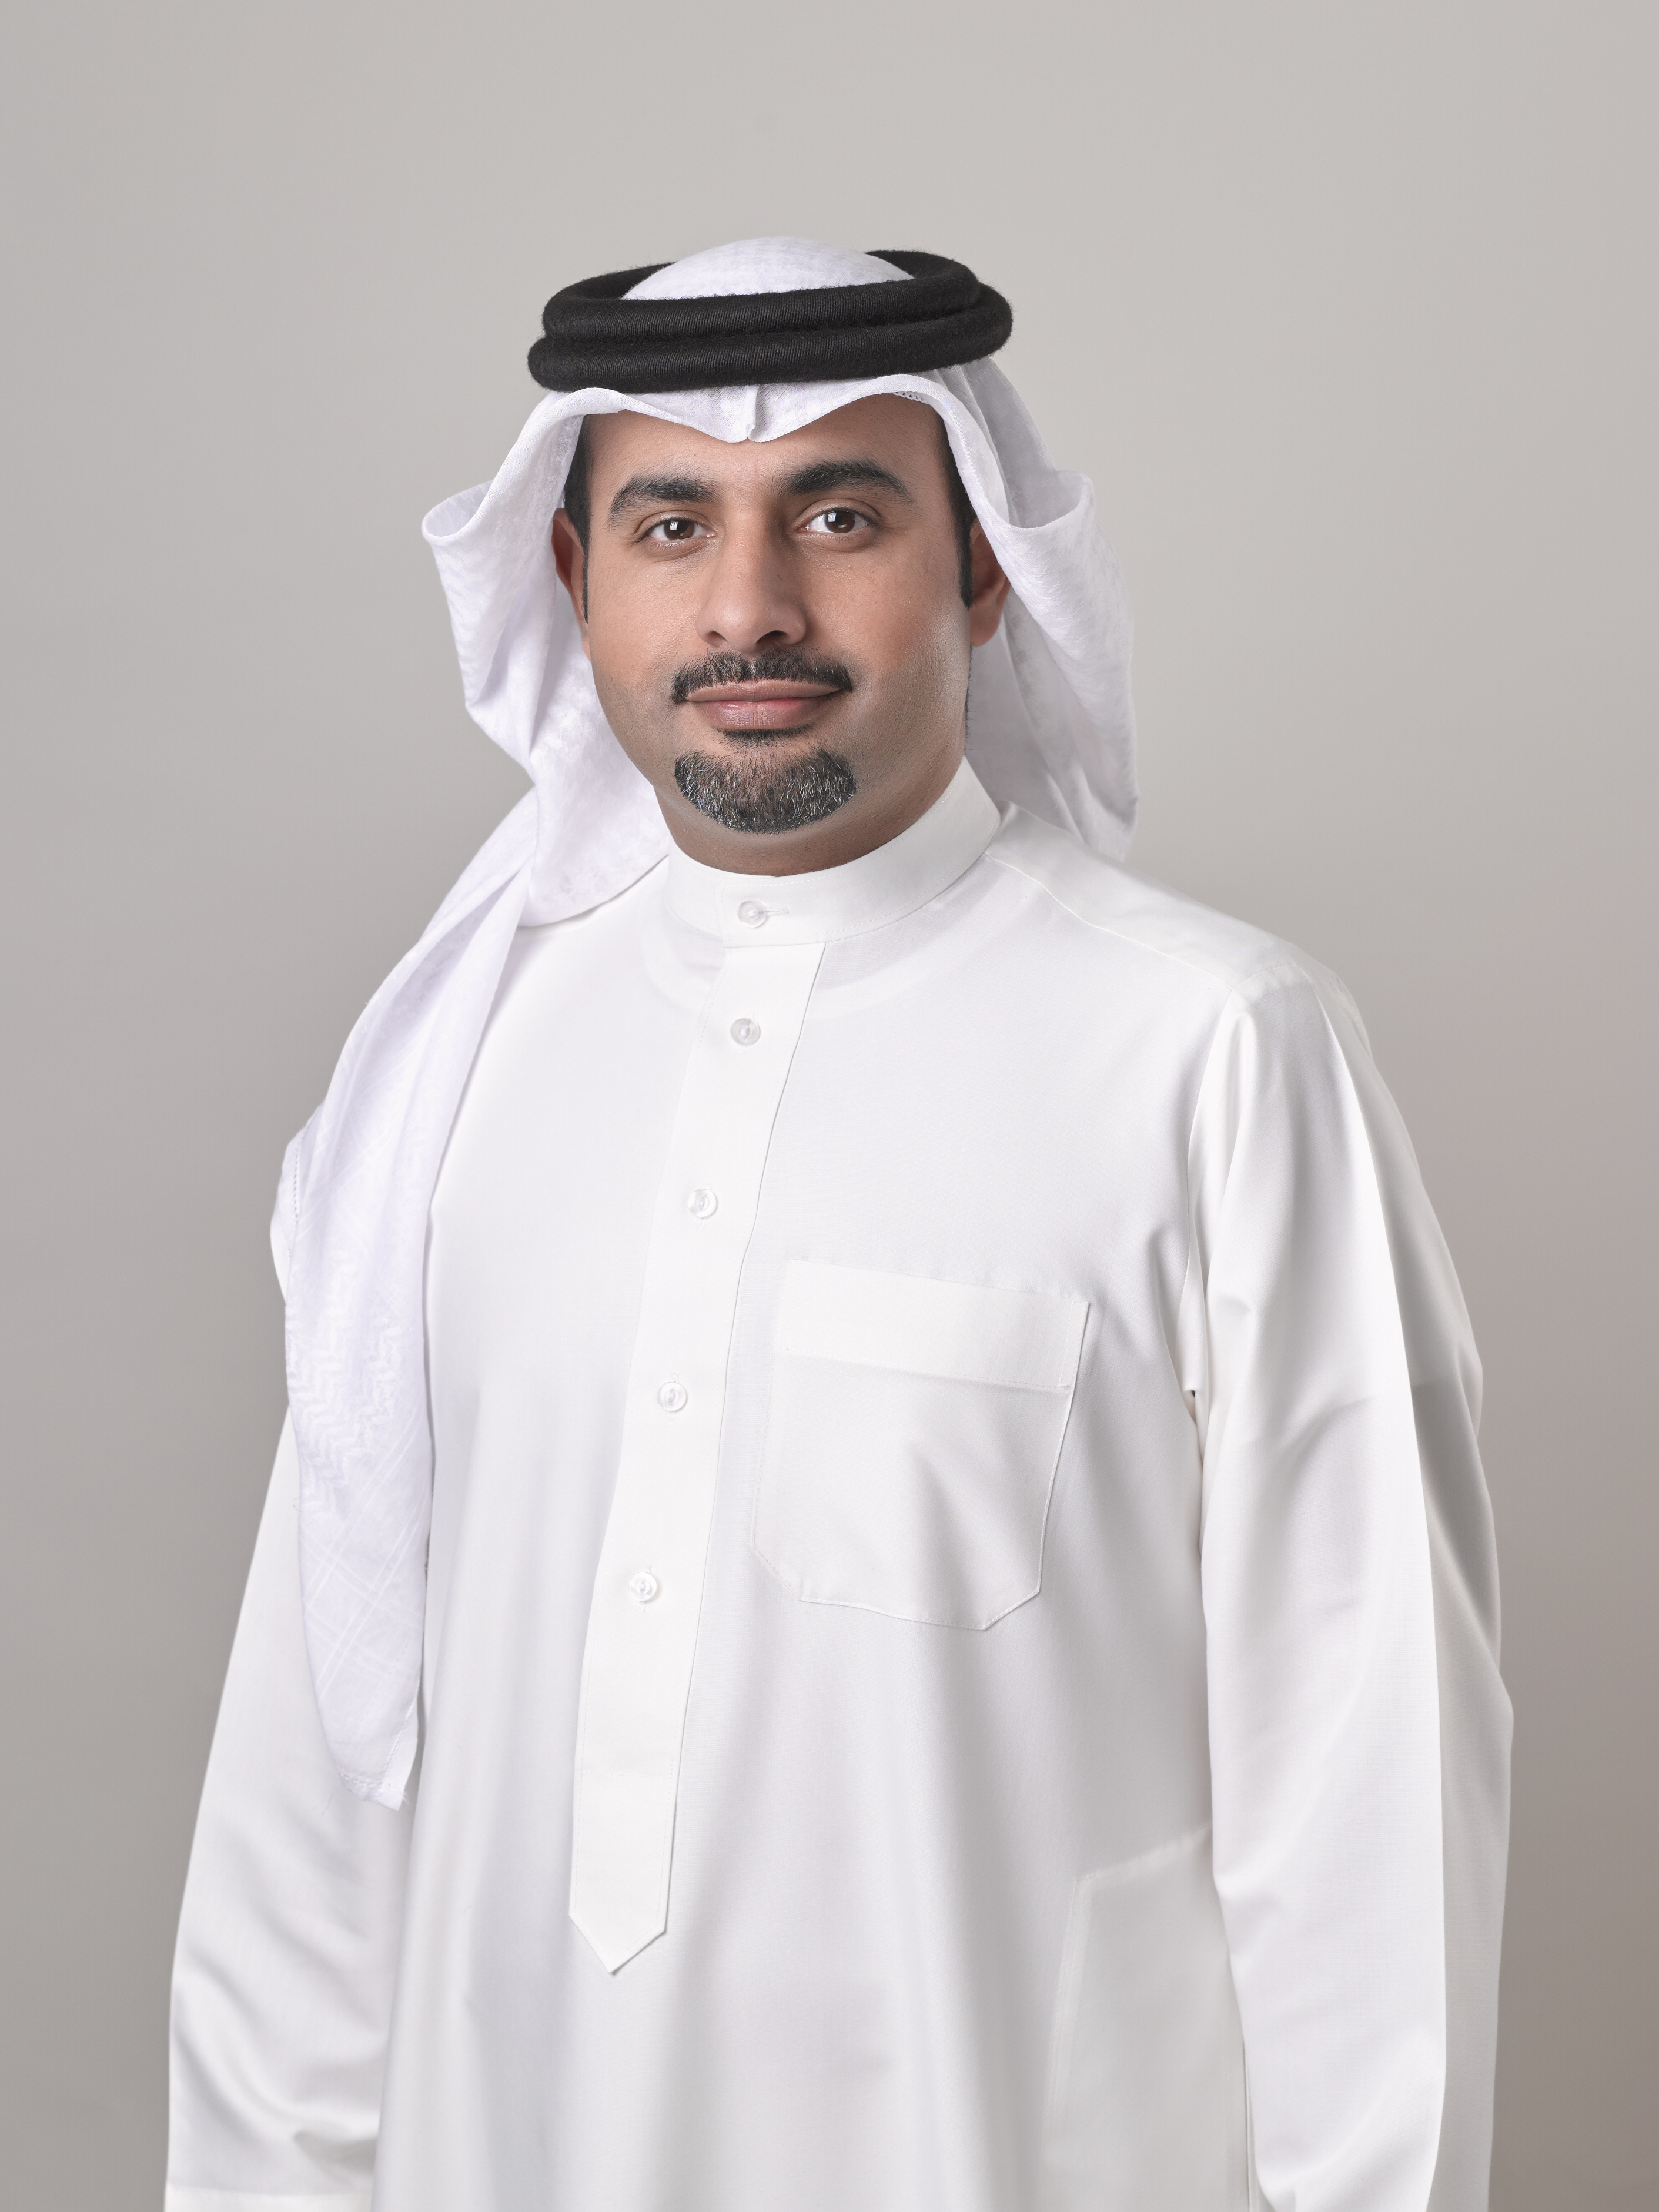 Sh. Nasser bin Mohamed Al Khalifa